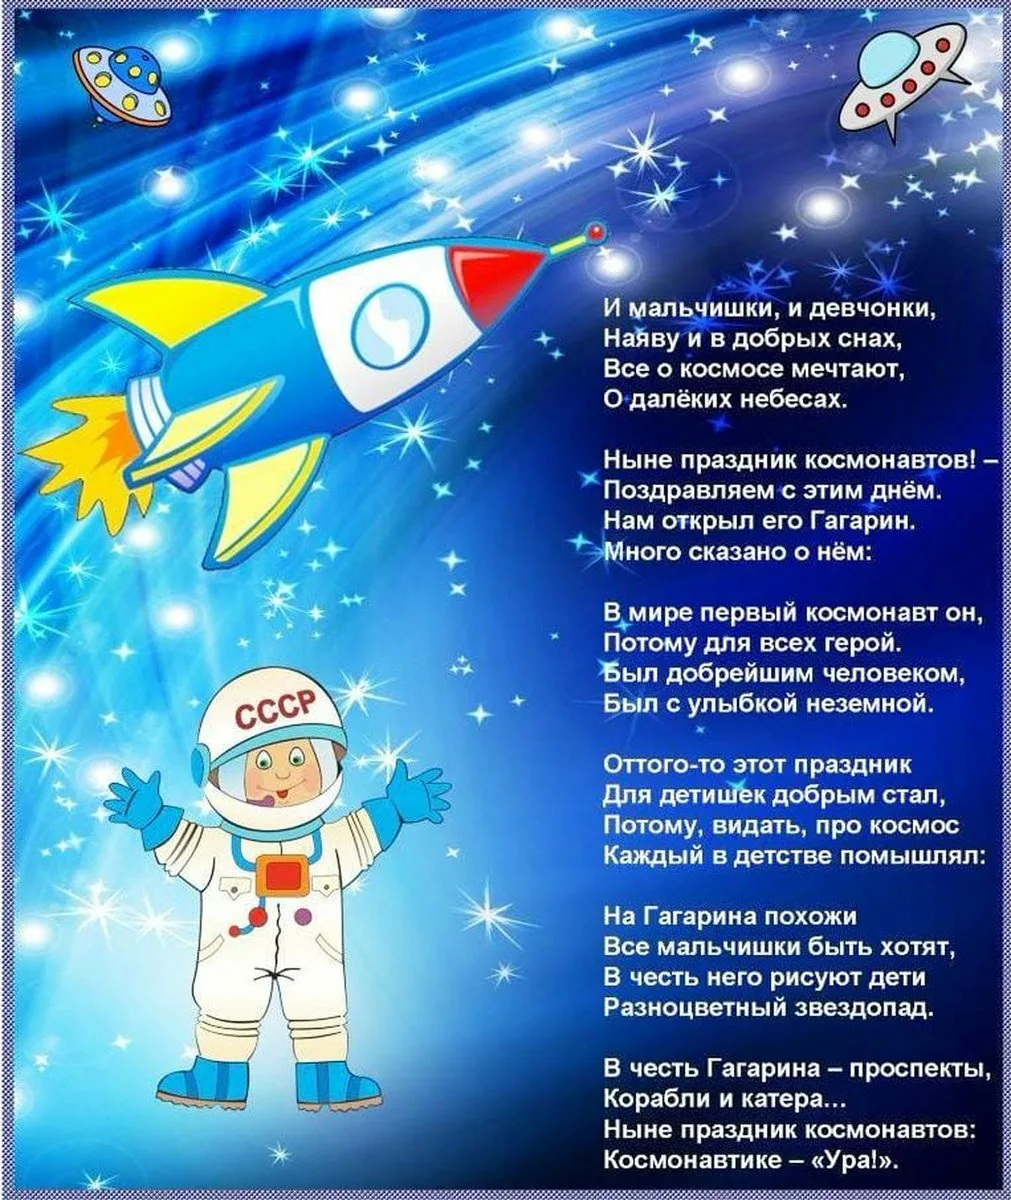 Фото Cosmonautics Day poem for children #12